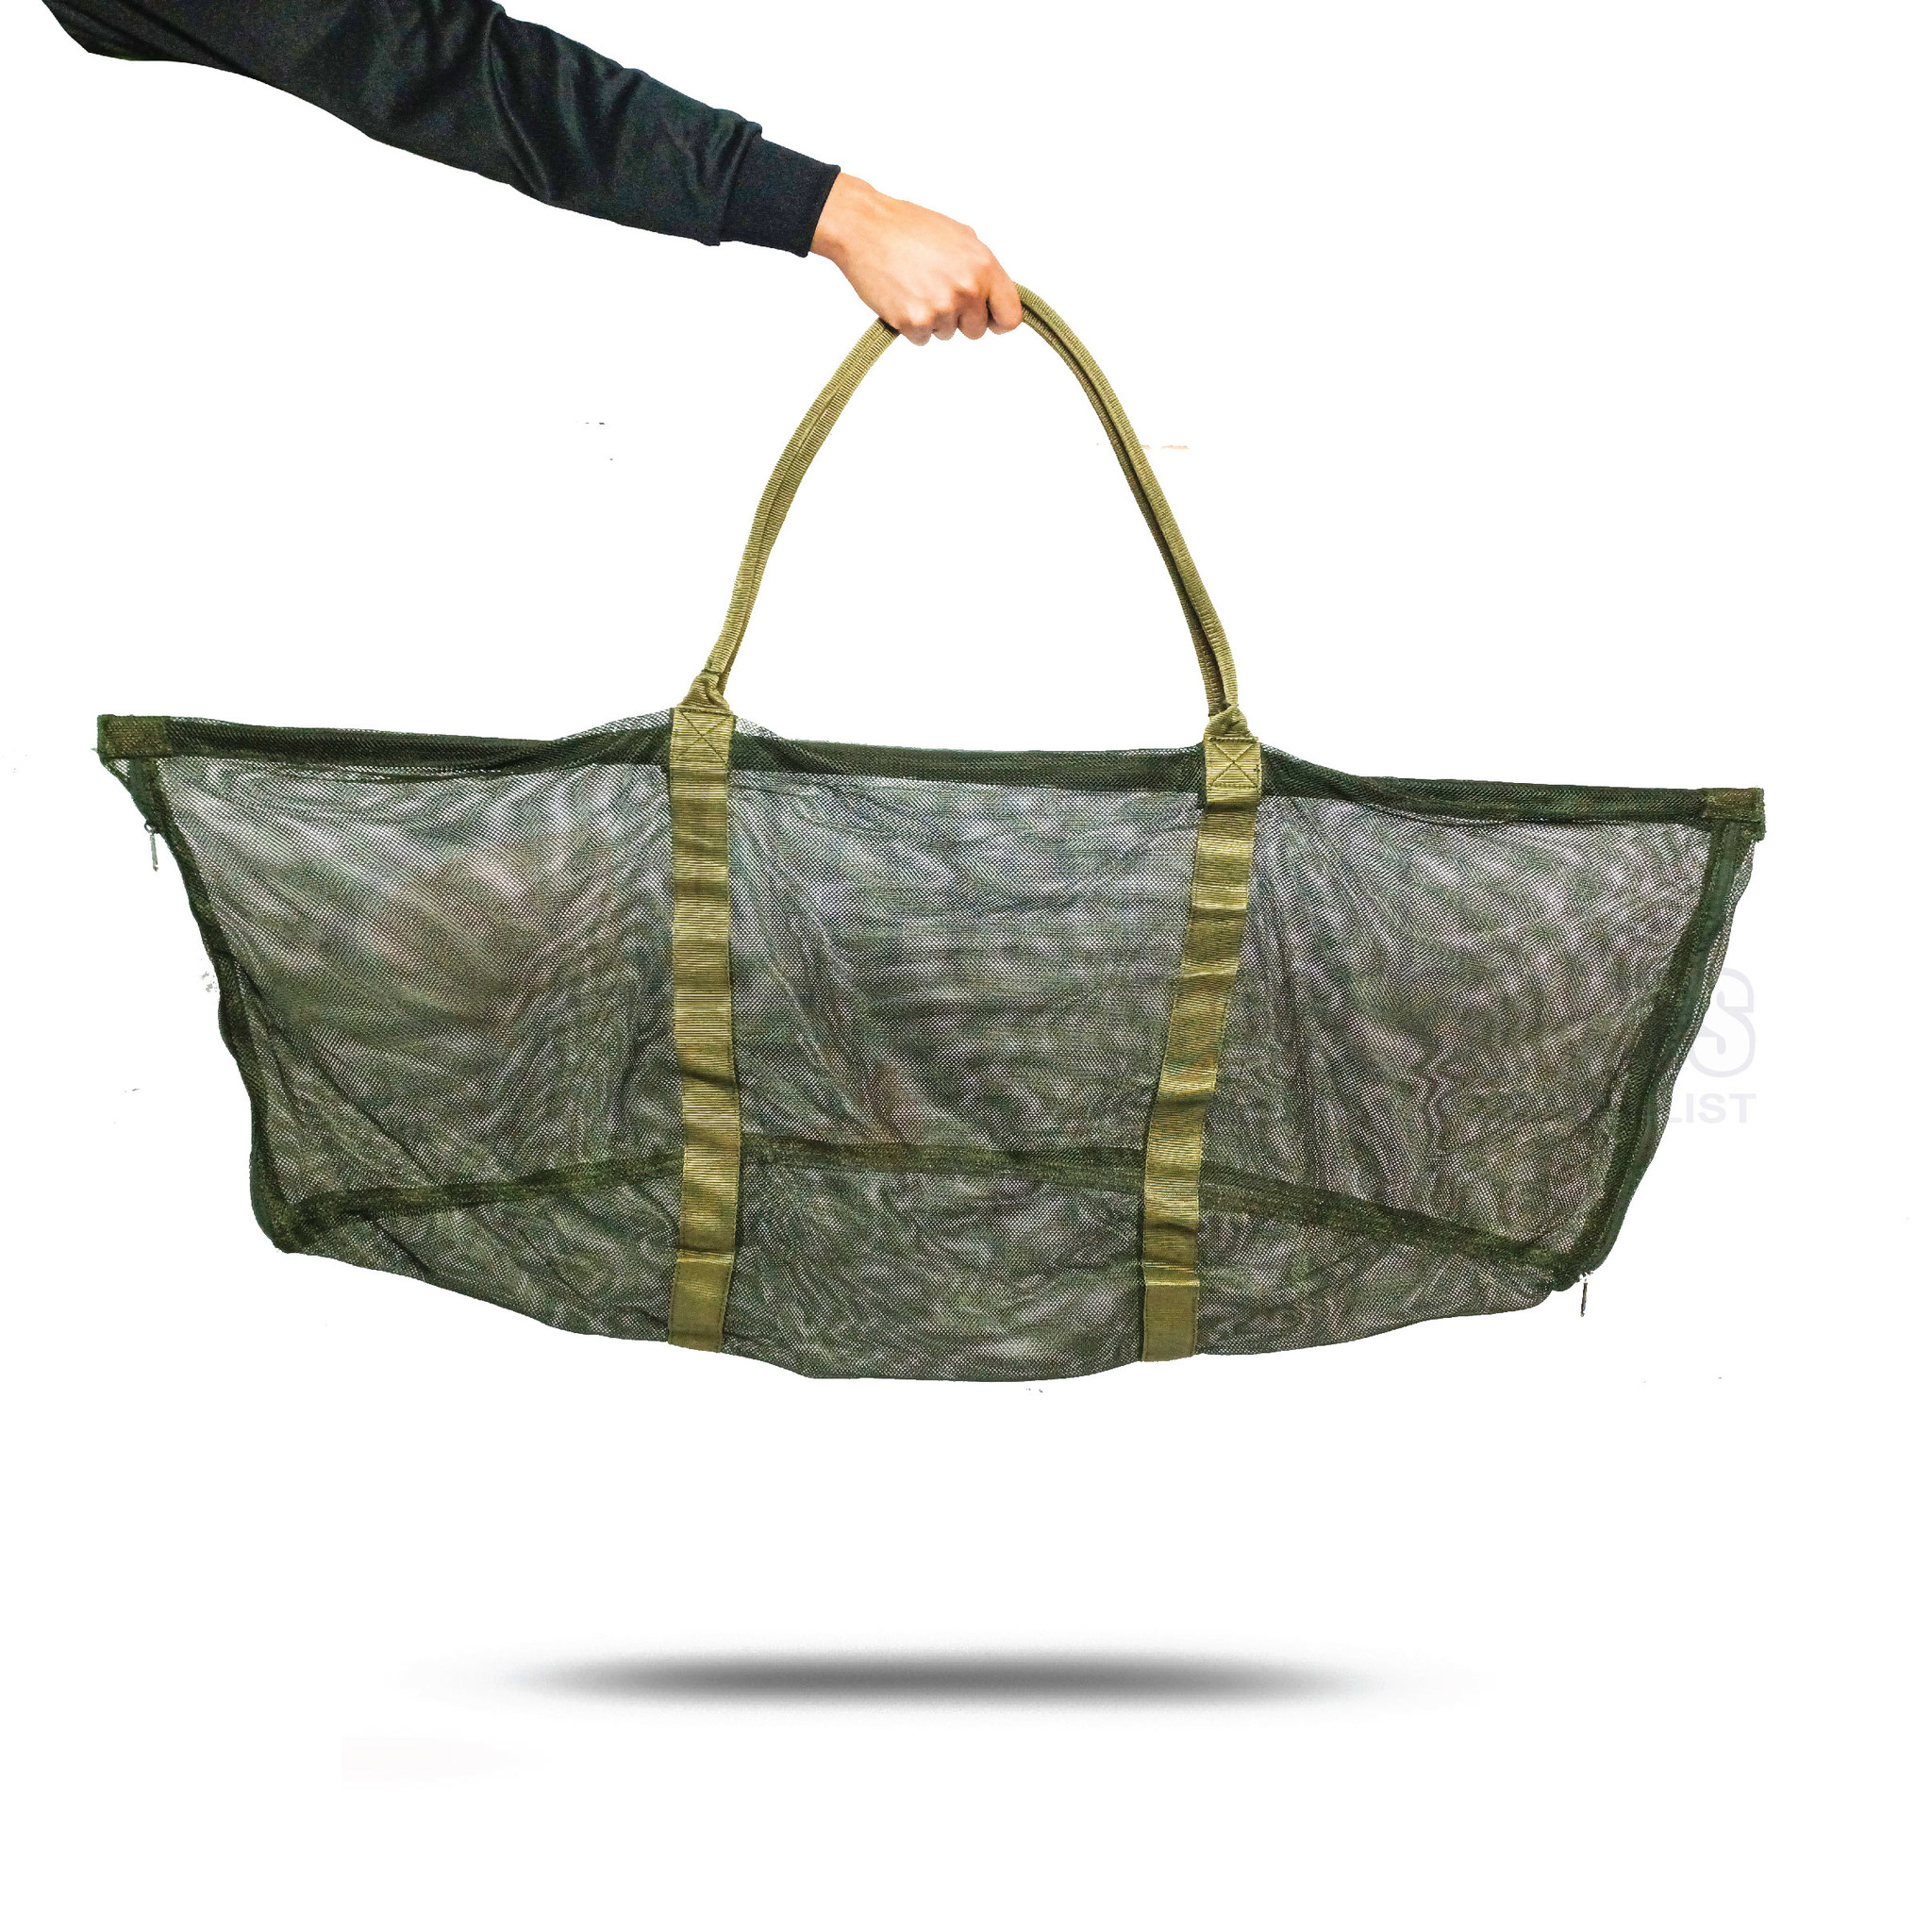 Vortex mesh weigh sling - Western Accessories Fishing & Outdoor